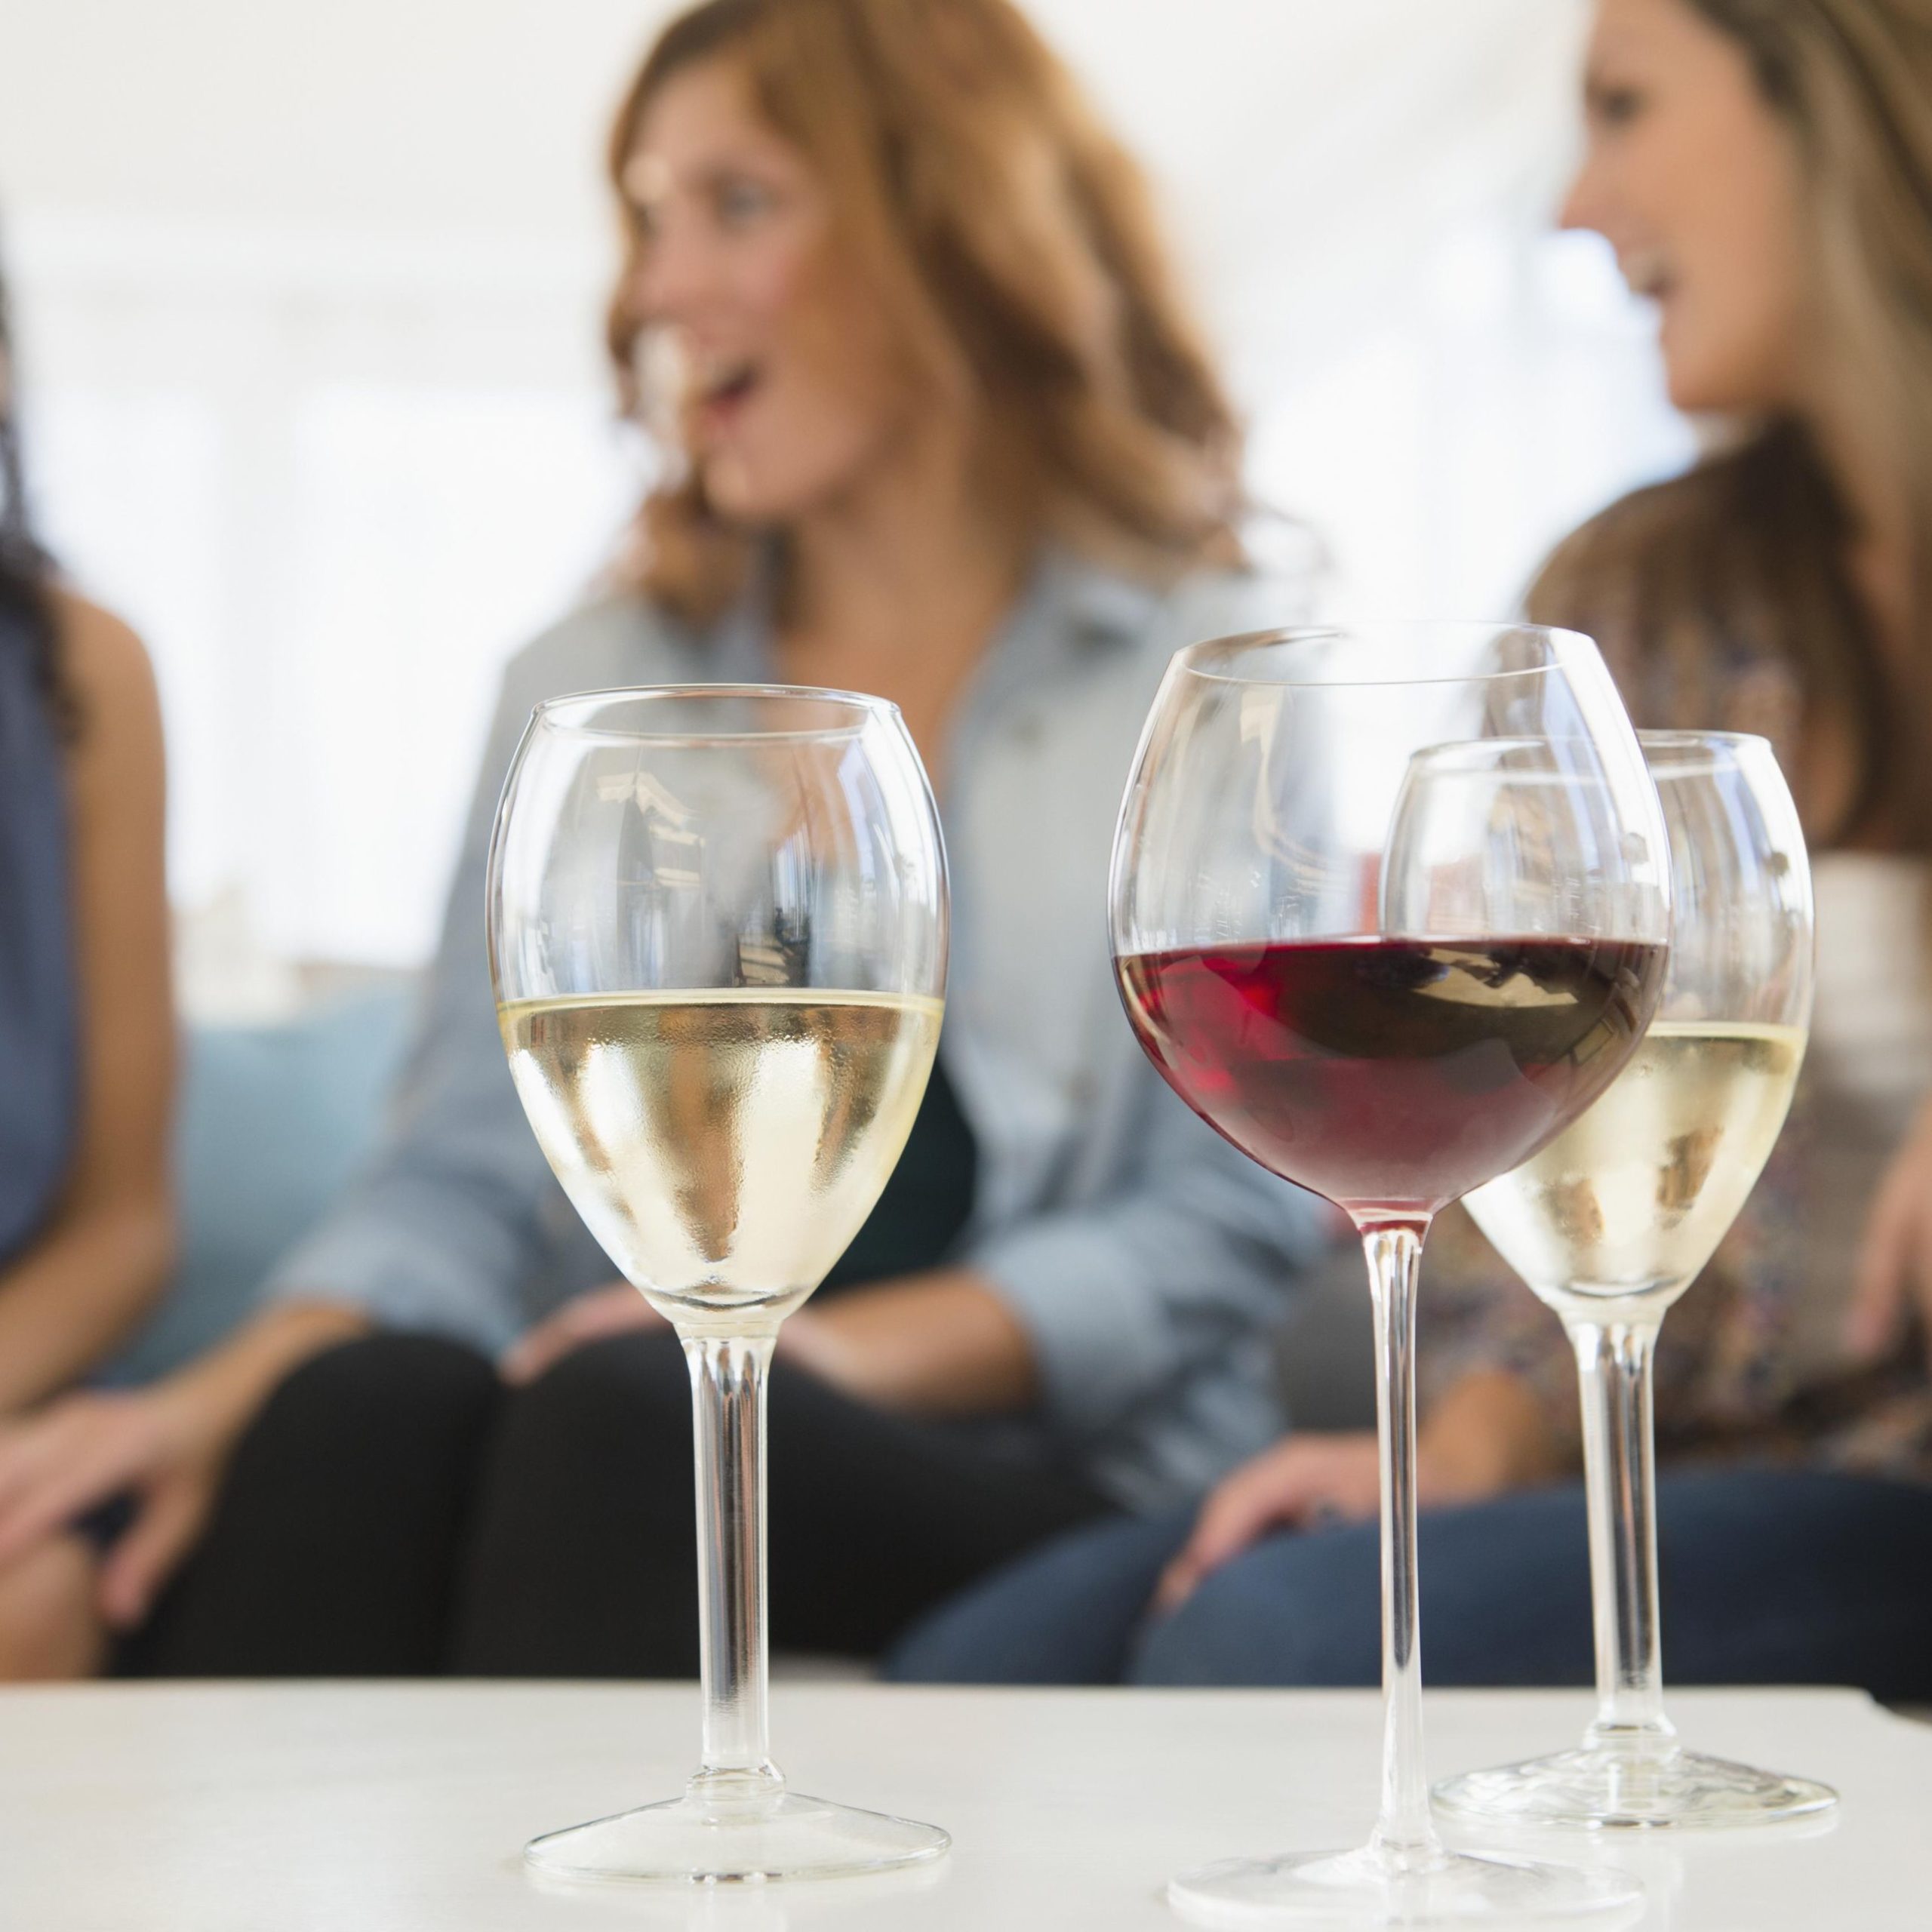 Chị em nên chọn các loại rượu nhẹ cho phụ nữ, tránh bị say và gây hại cho sức khỏe.